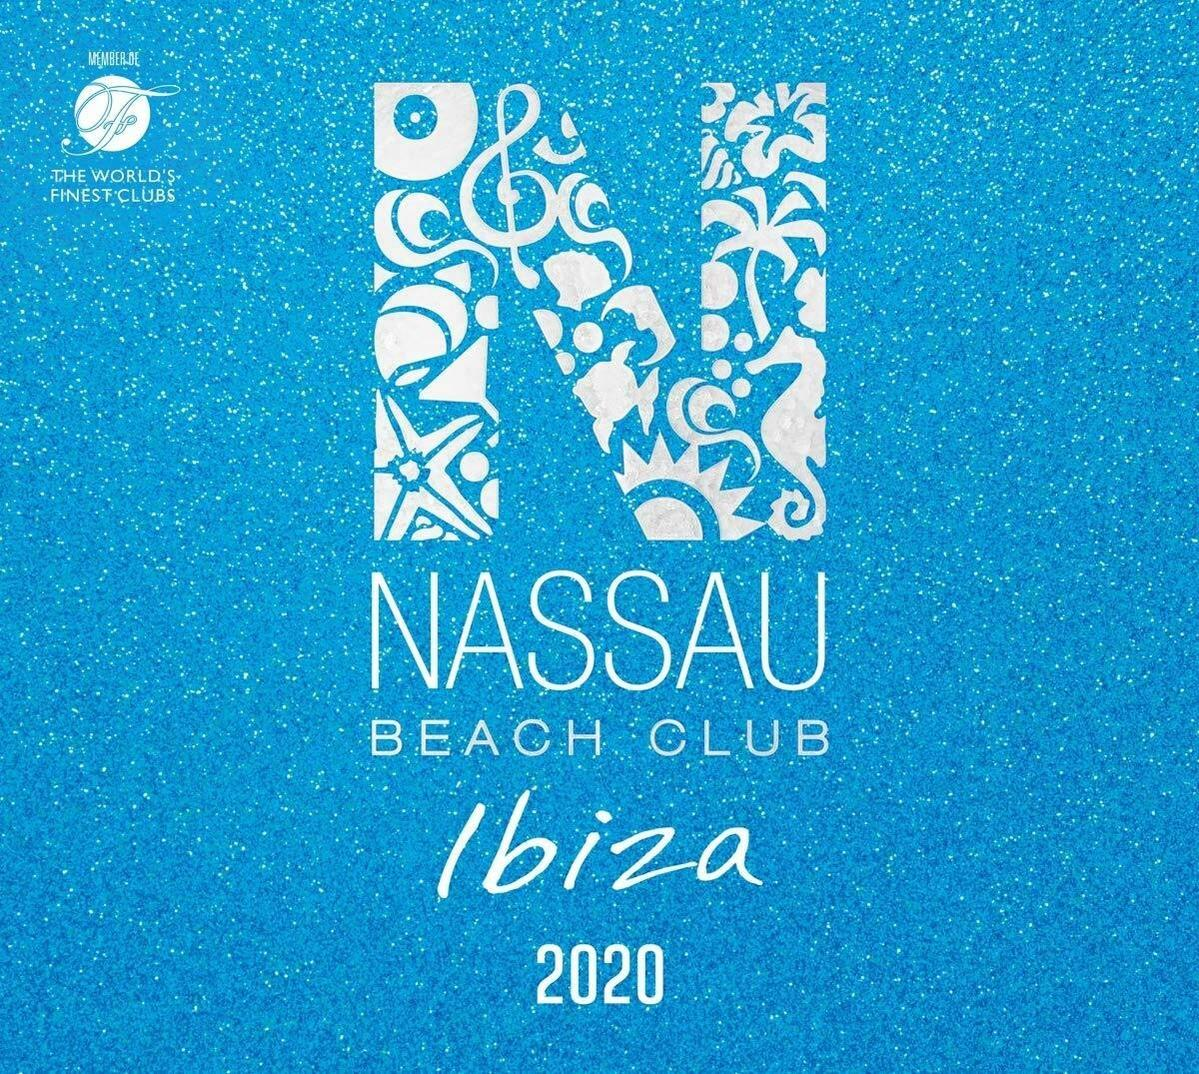 (CD) CLUB BEACH VARIOUS - IBIZA - 2020 NASSAU